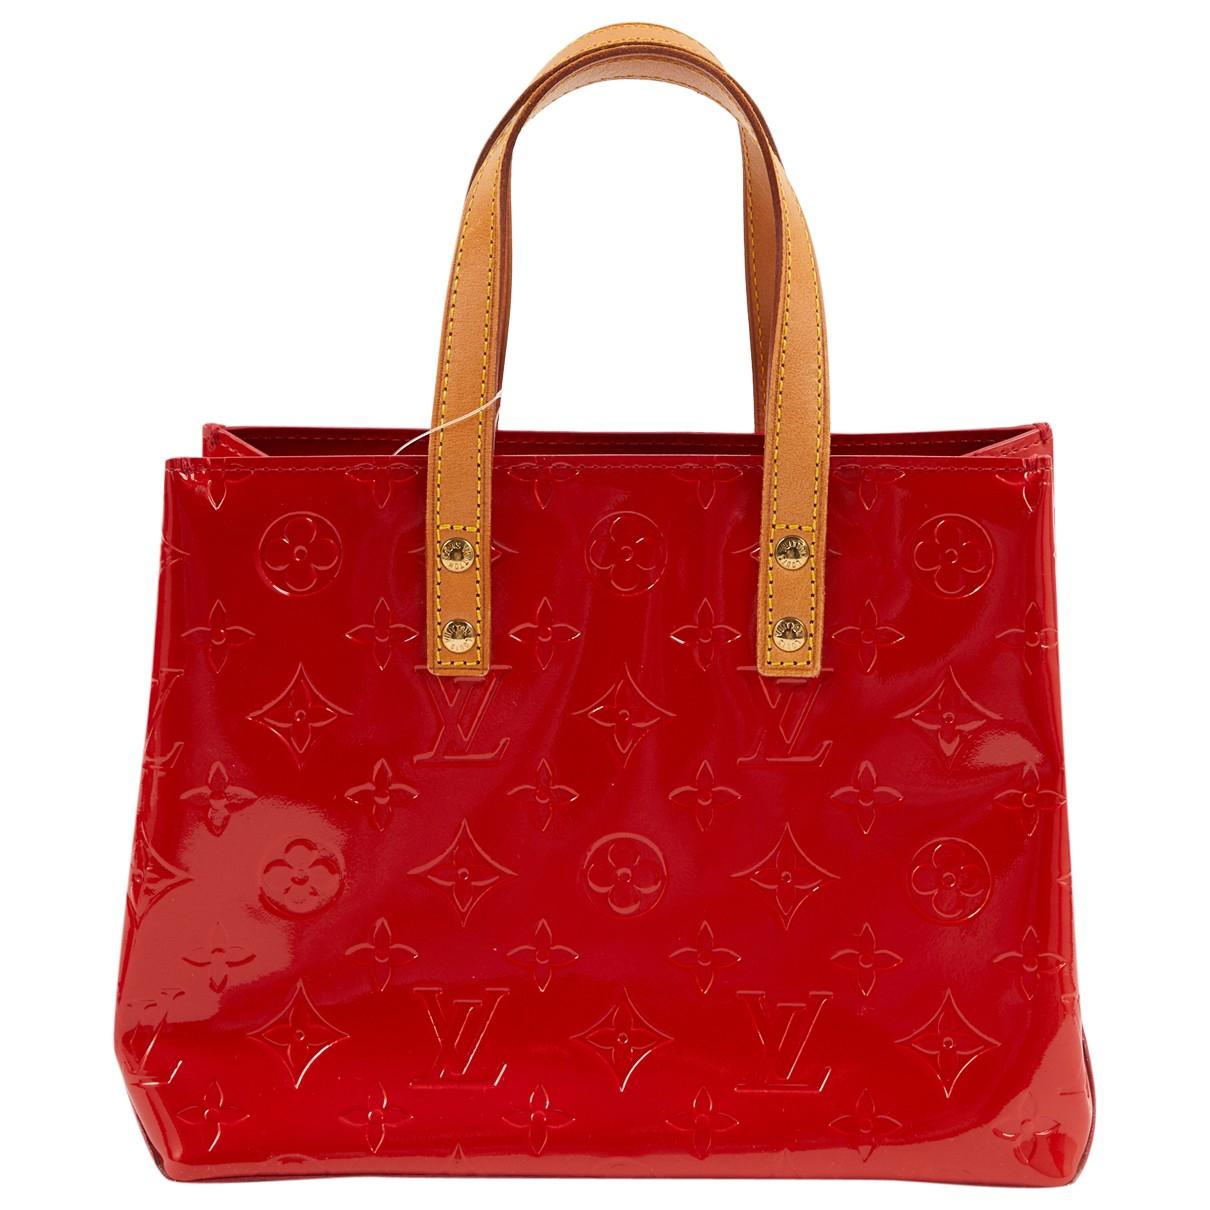 Louis Vuitton Patent Leather Handbag Prices | Cepar